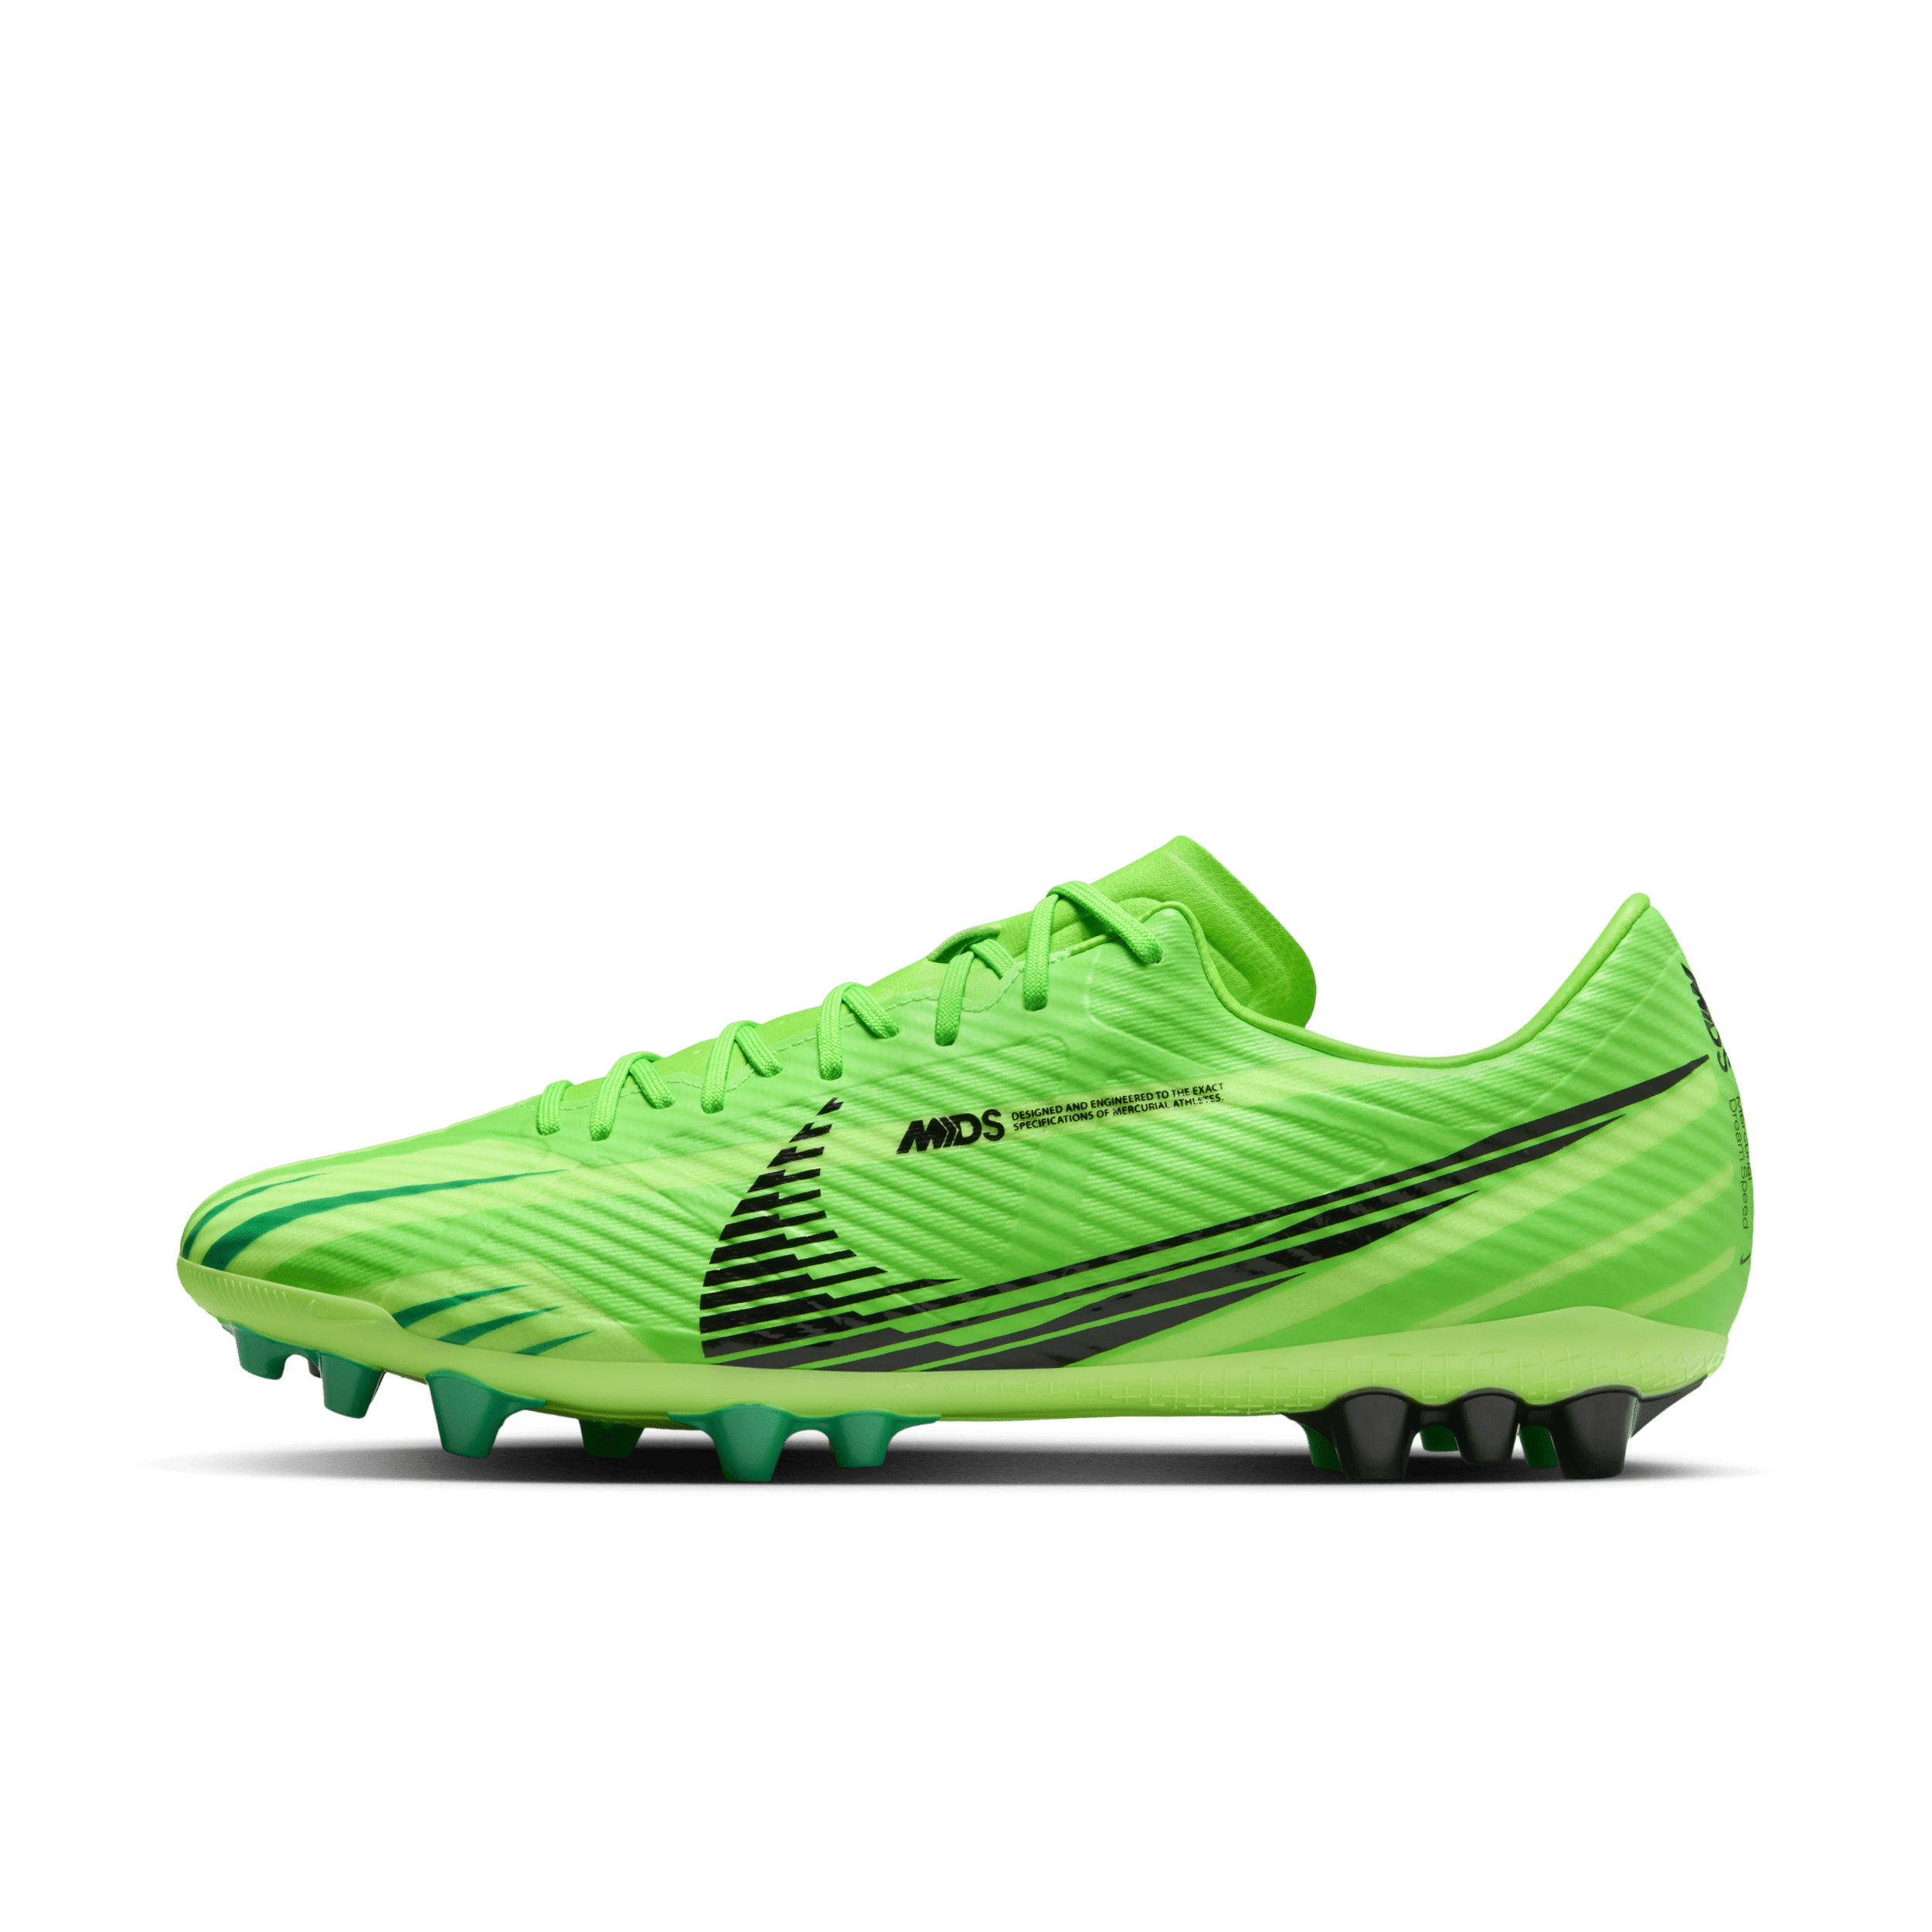 Nike Vapor 15 Academy Mercurial Dream Speed low-top voetbalschoenen (kunstgras) - Groen